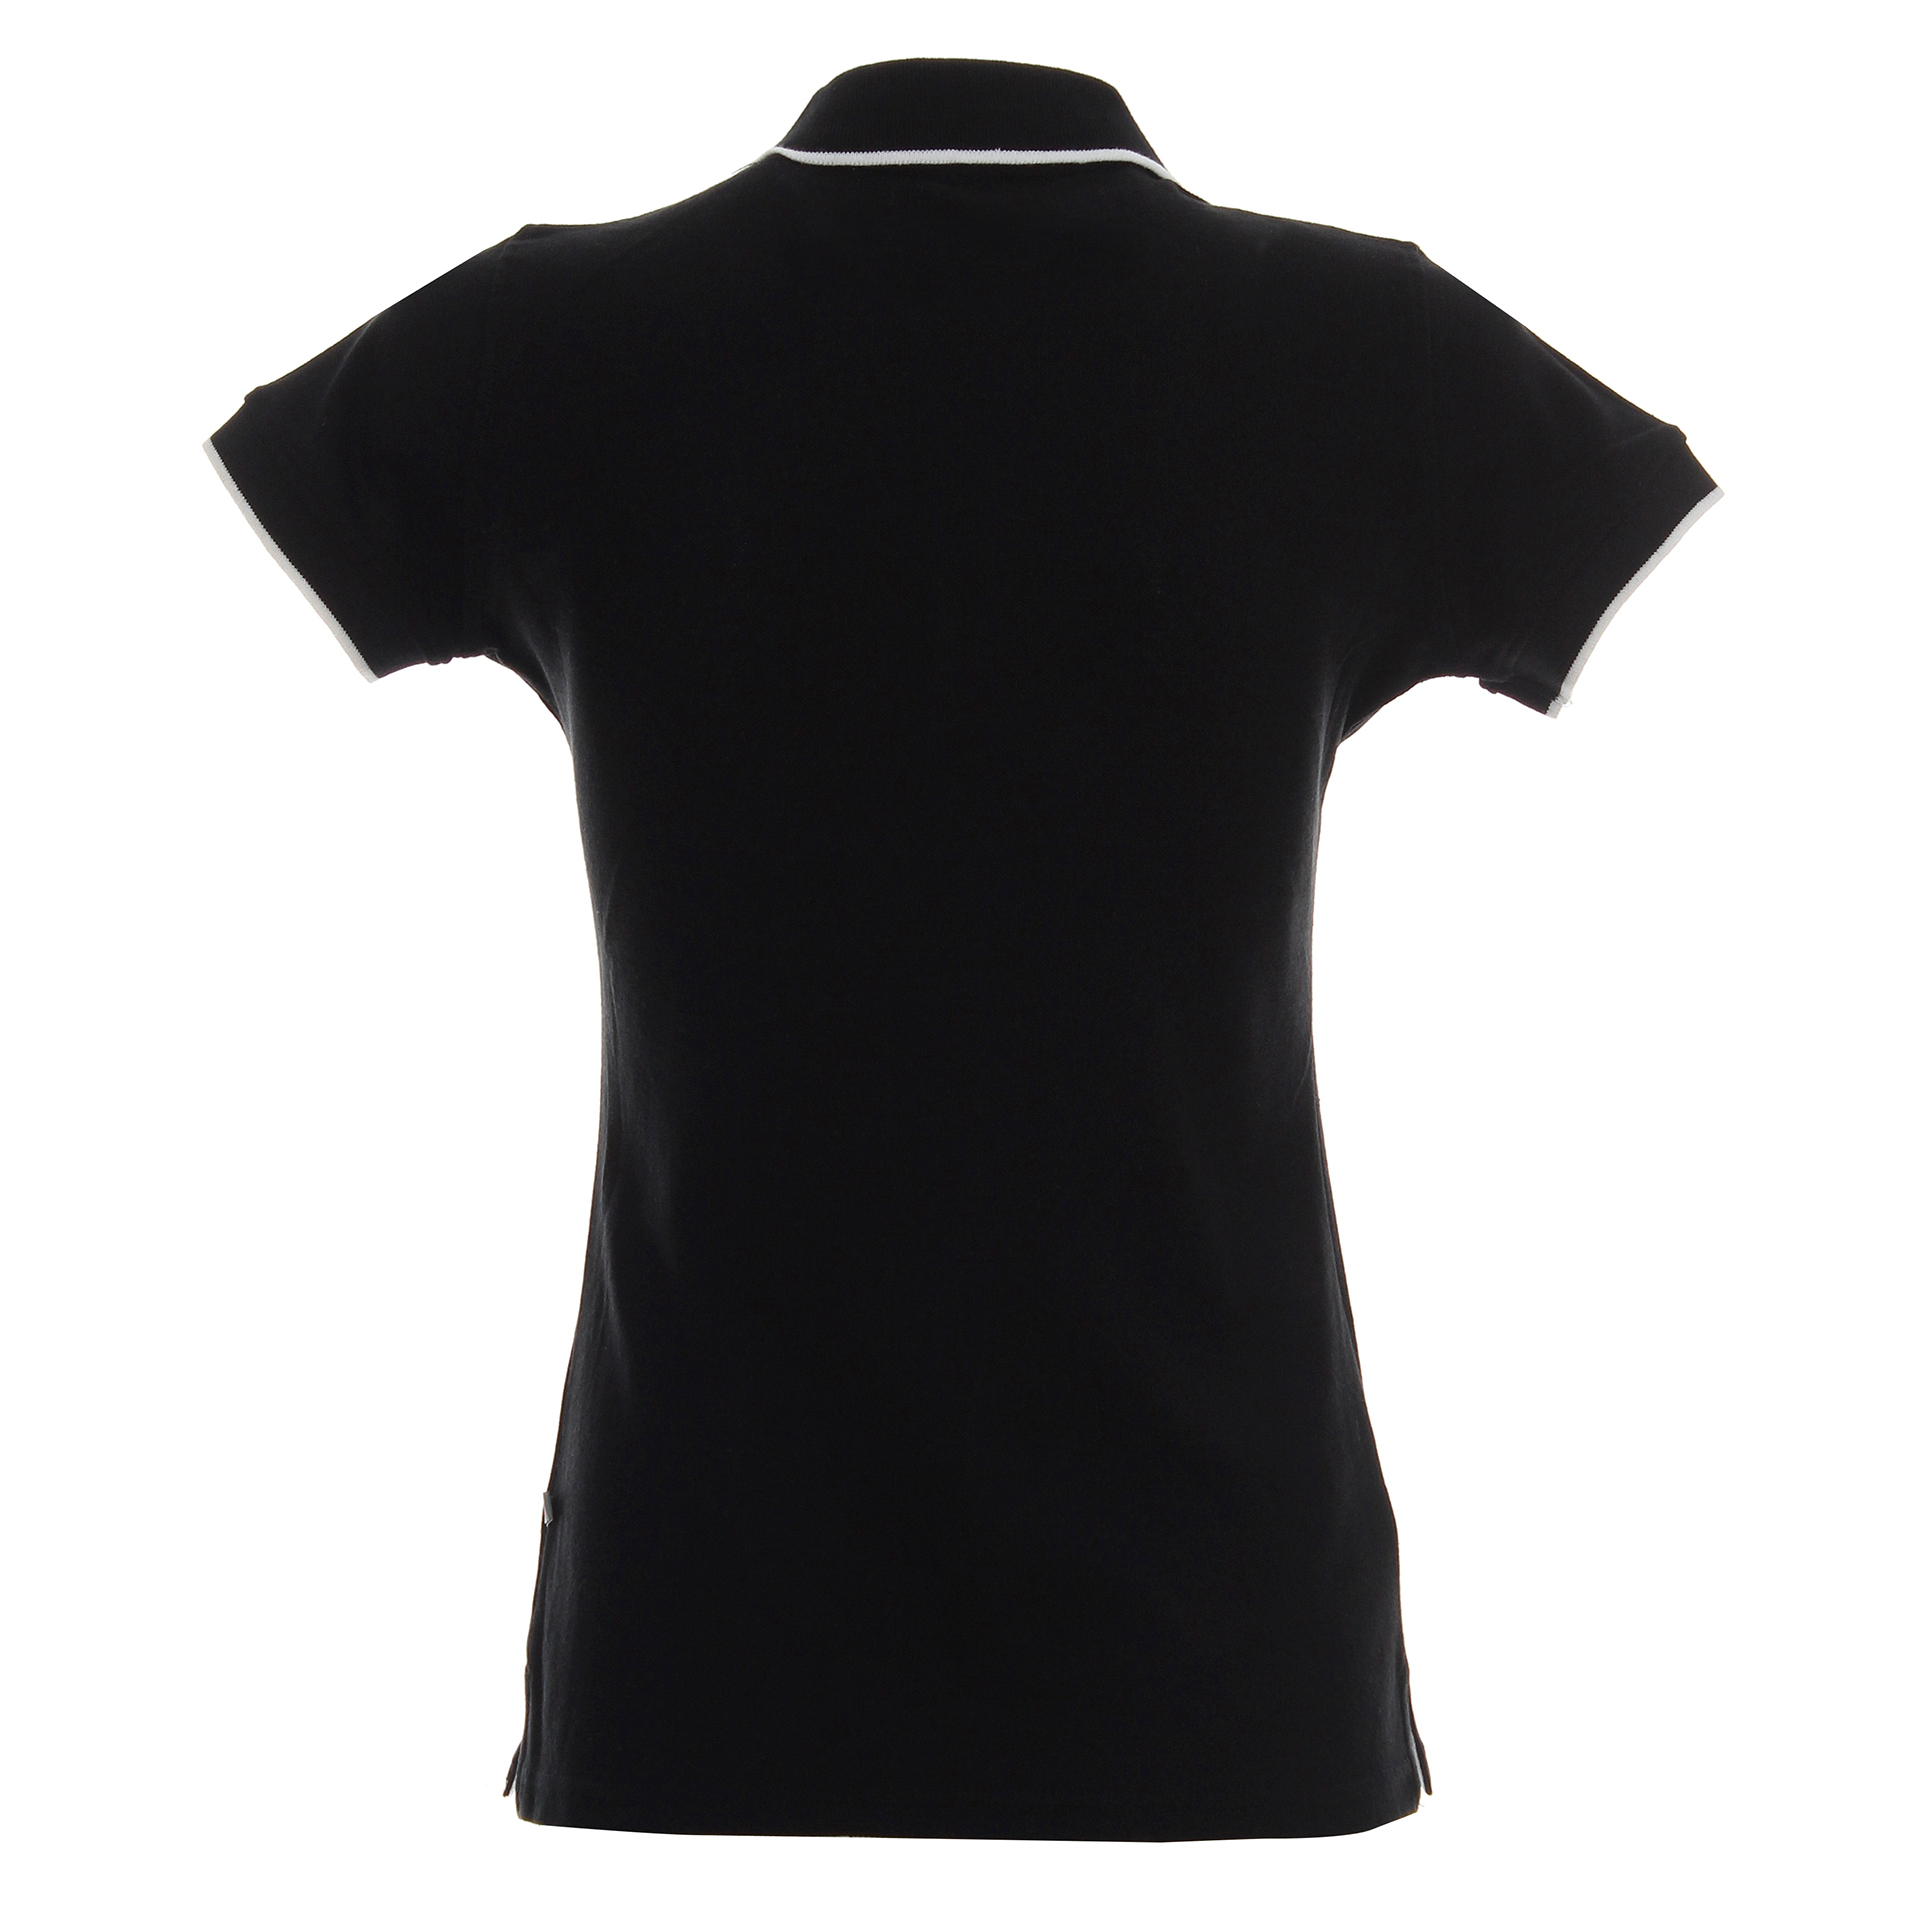 Koszulka Polo Promostars Ladies Line - czarna z białym wykończeniem